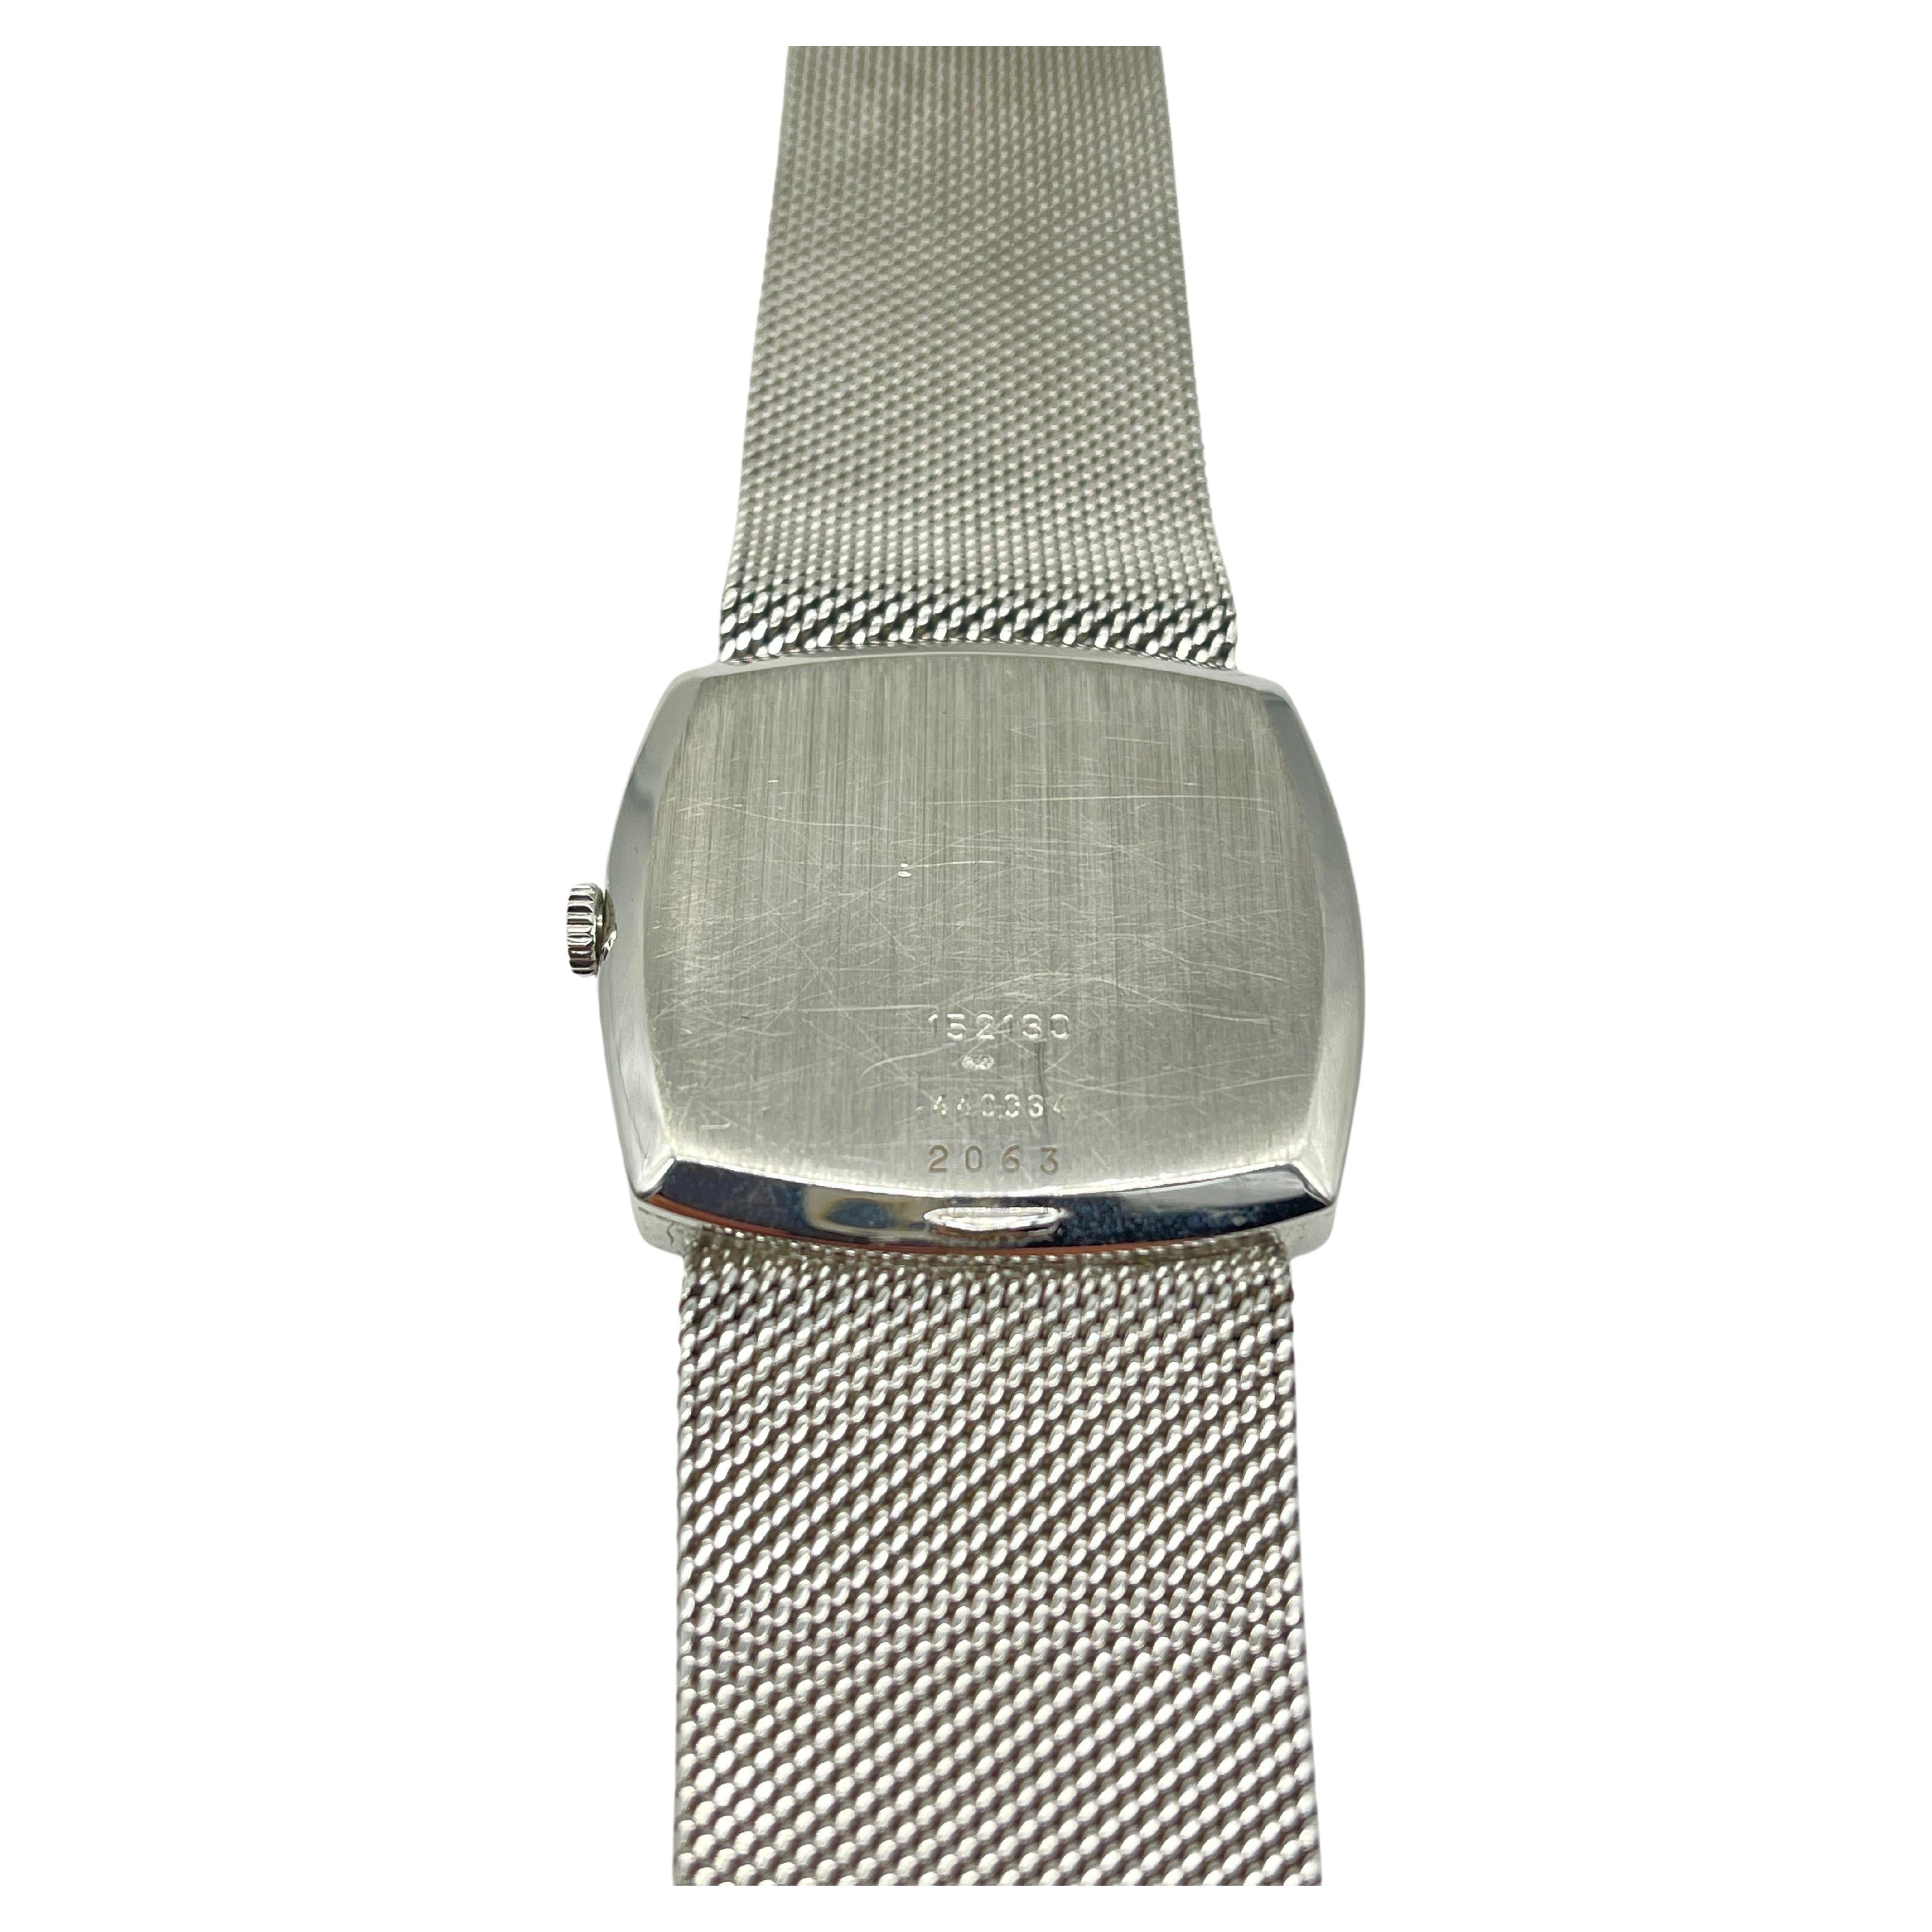 Majestic Chopard Genve ref:2063 wrist watch in 18k Whitegold  For Sale 2